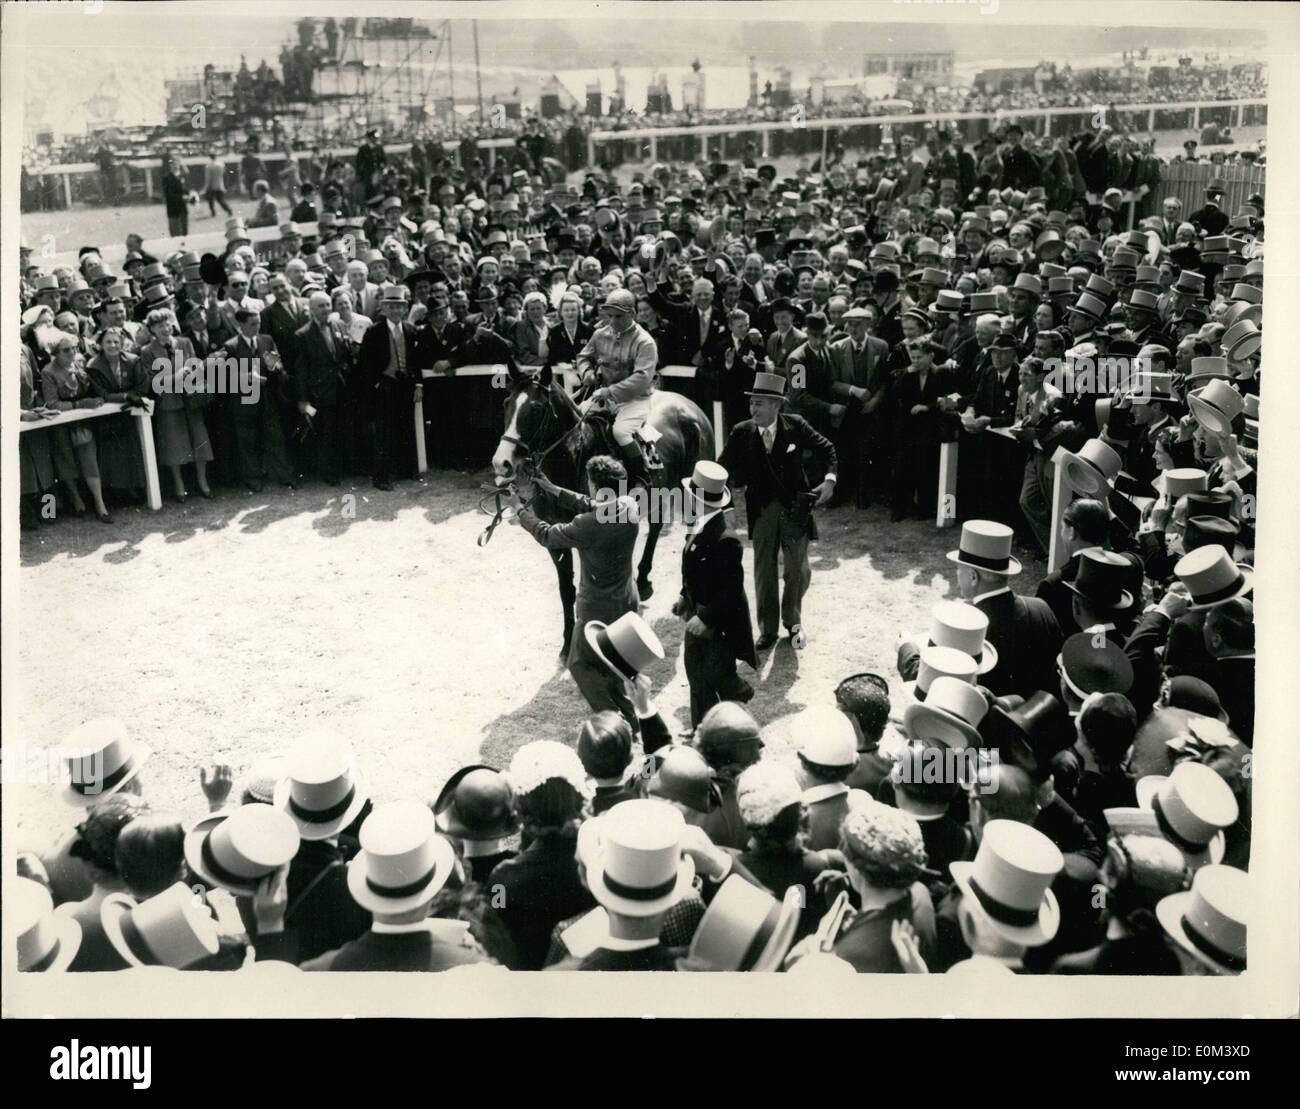 Giugno 06, 1953 - Gordon Richards vince il derby di incoronazione. Regina del cavallo della seconda: Gordon Richards, il campione del fantino, oggi ha vinto il suo primo Derby, su Sir V. Sassoon's ''Pinza''. La regina del cavallo della ''aureola'' è stata la seconda e ''Rosa cavallo.'' cavalcato da Rae Johnnstone, è terzo. La foto mostra: La scena della Winner's enclosure, mostrando Gordon Richards fino sul vincitore ''Pinza'', dopo la gara di oggi. Foto Stock